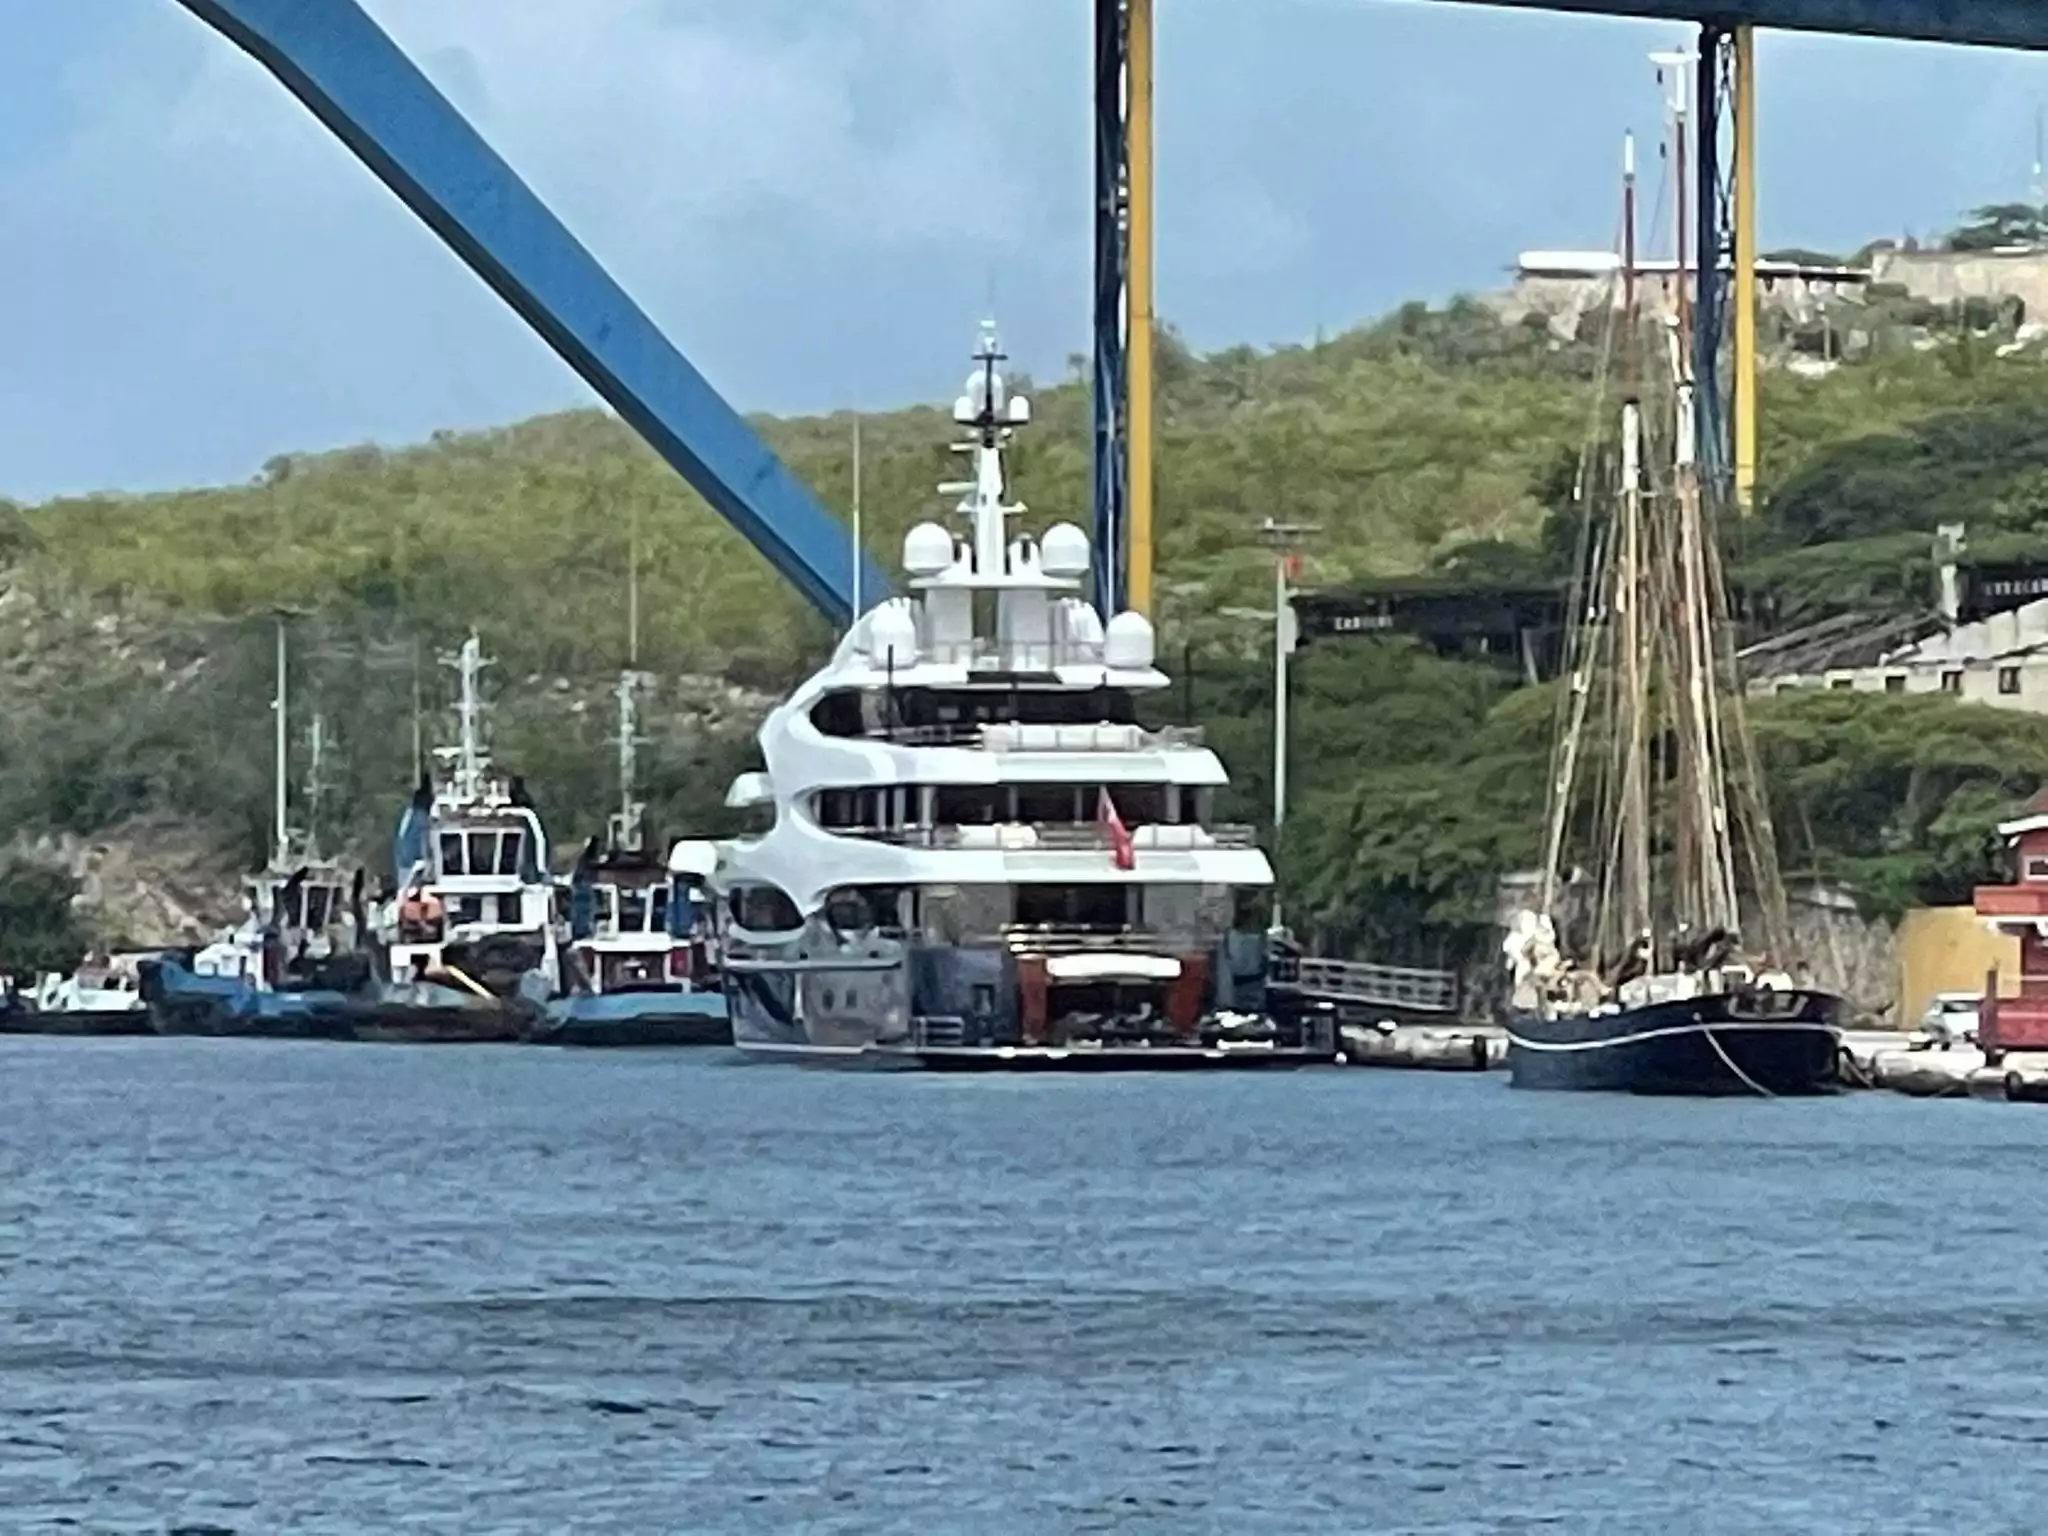 Lo yacht Barbara dell'Oceanco a Willemstad Curacao